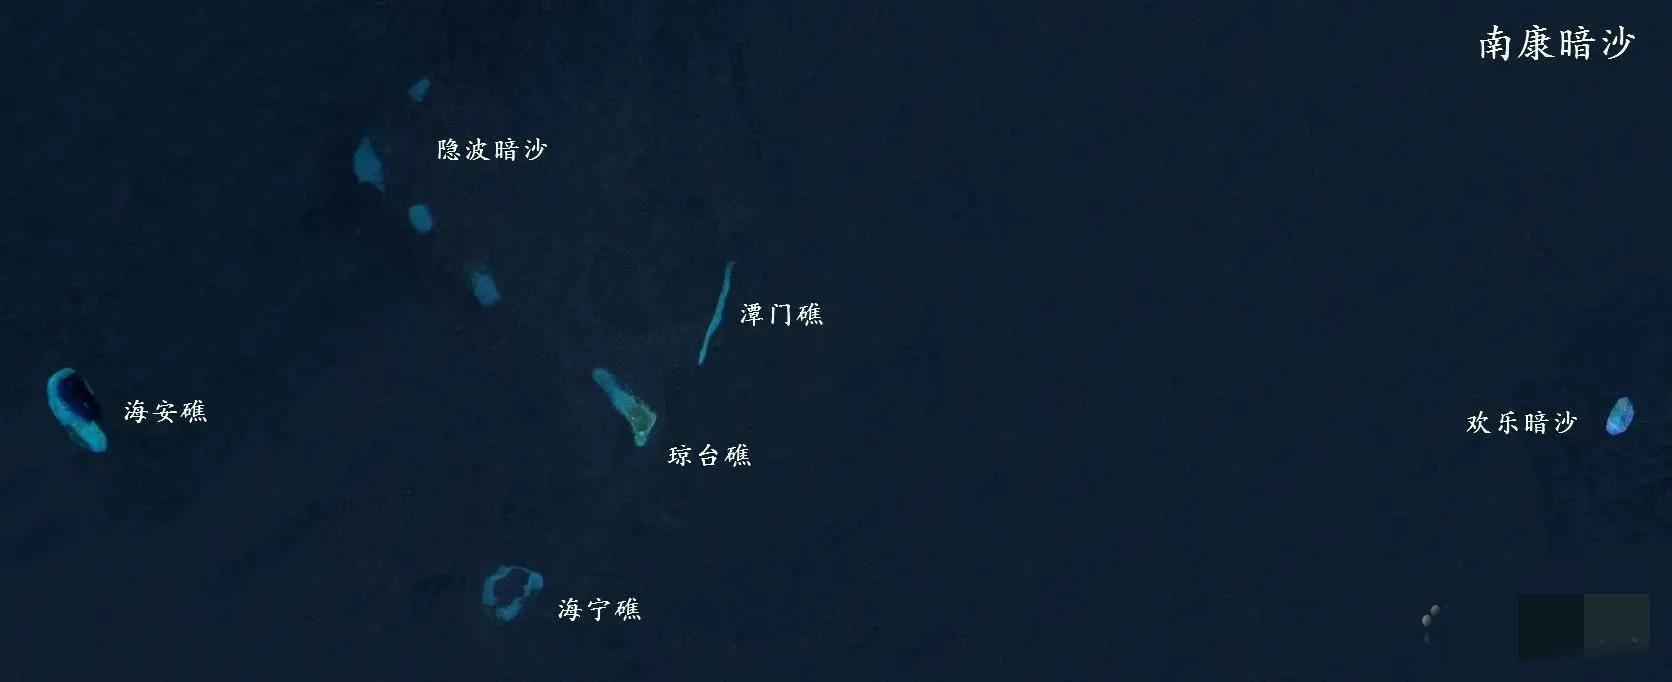 海宁礁实际控制现状(中国南沙岛礁-海宁礁)